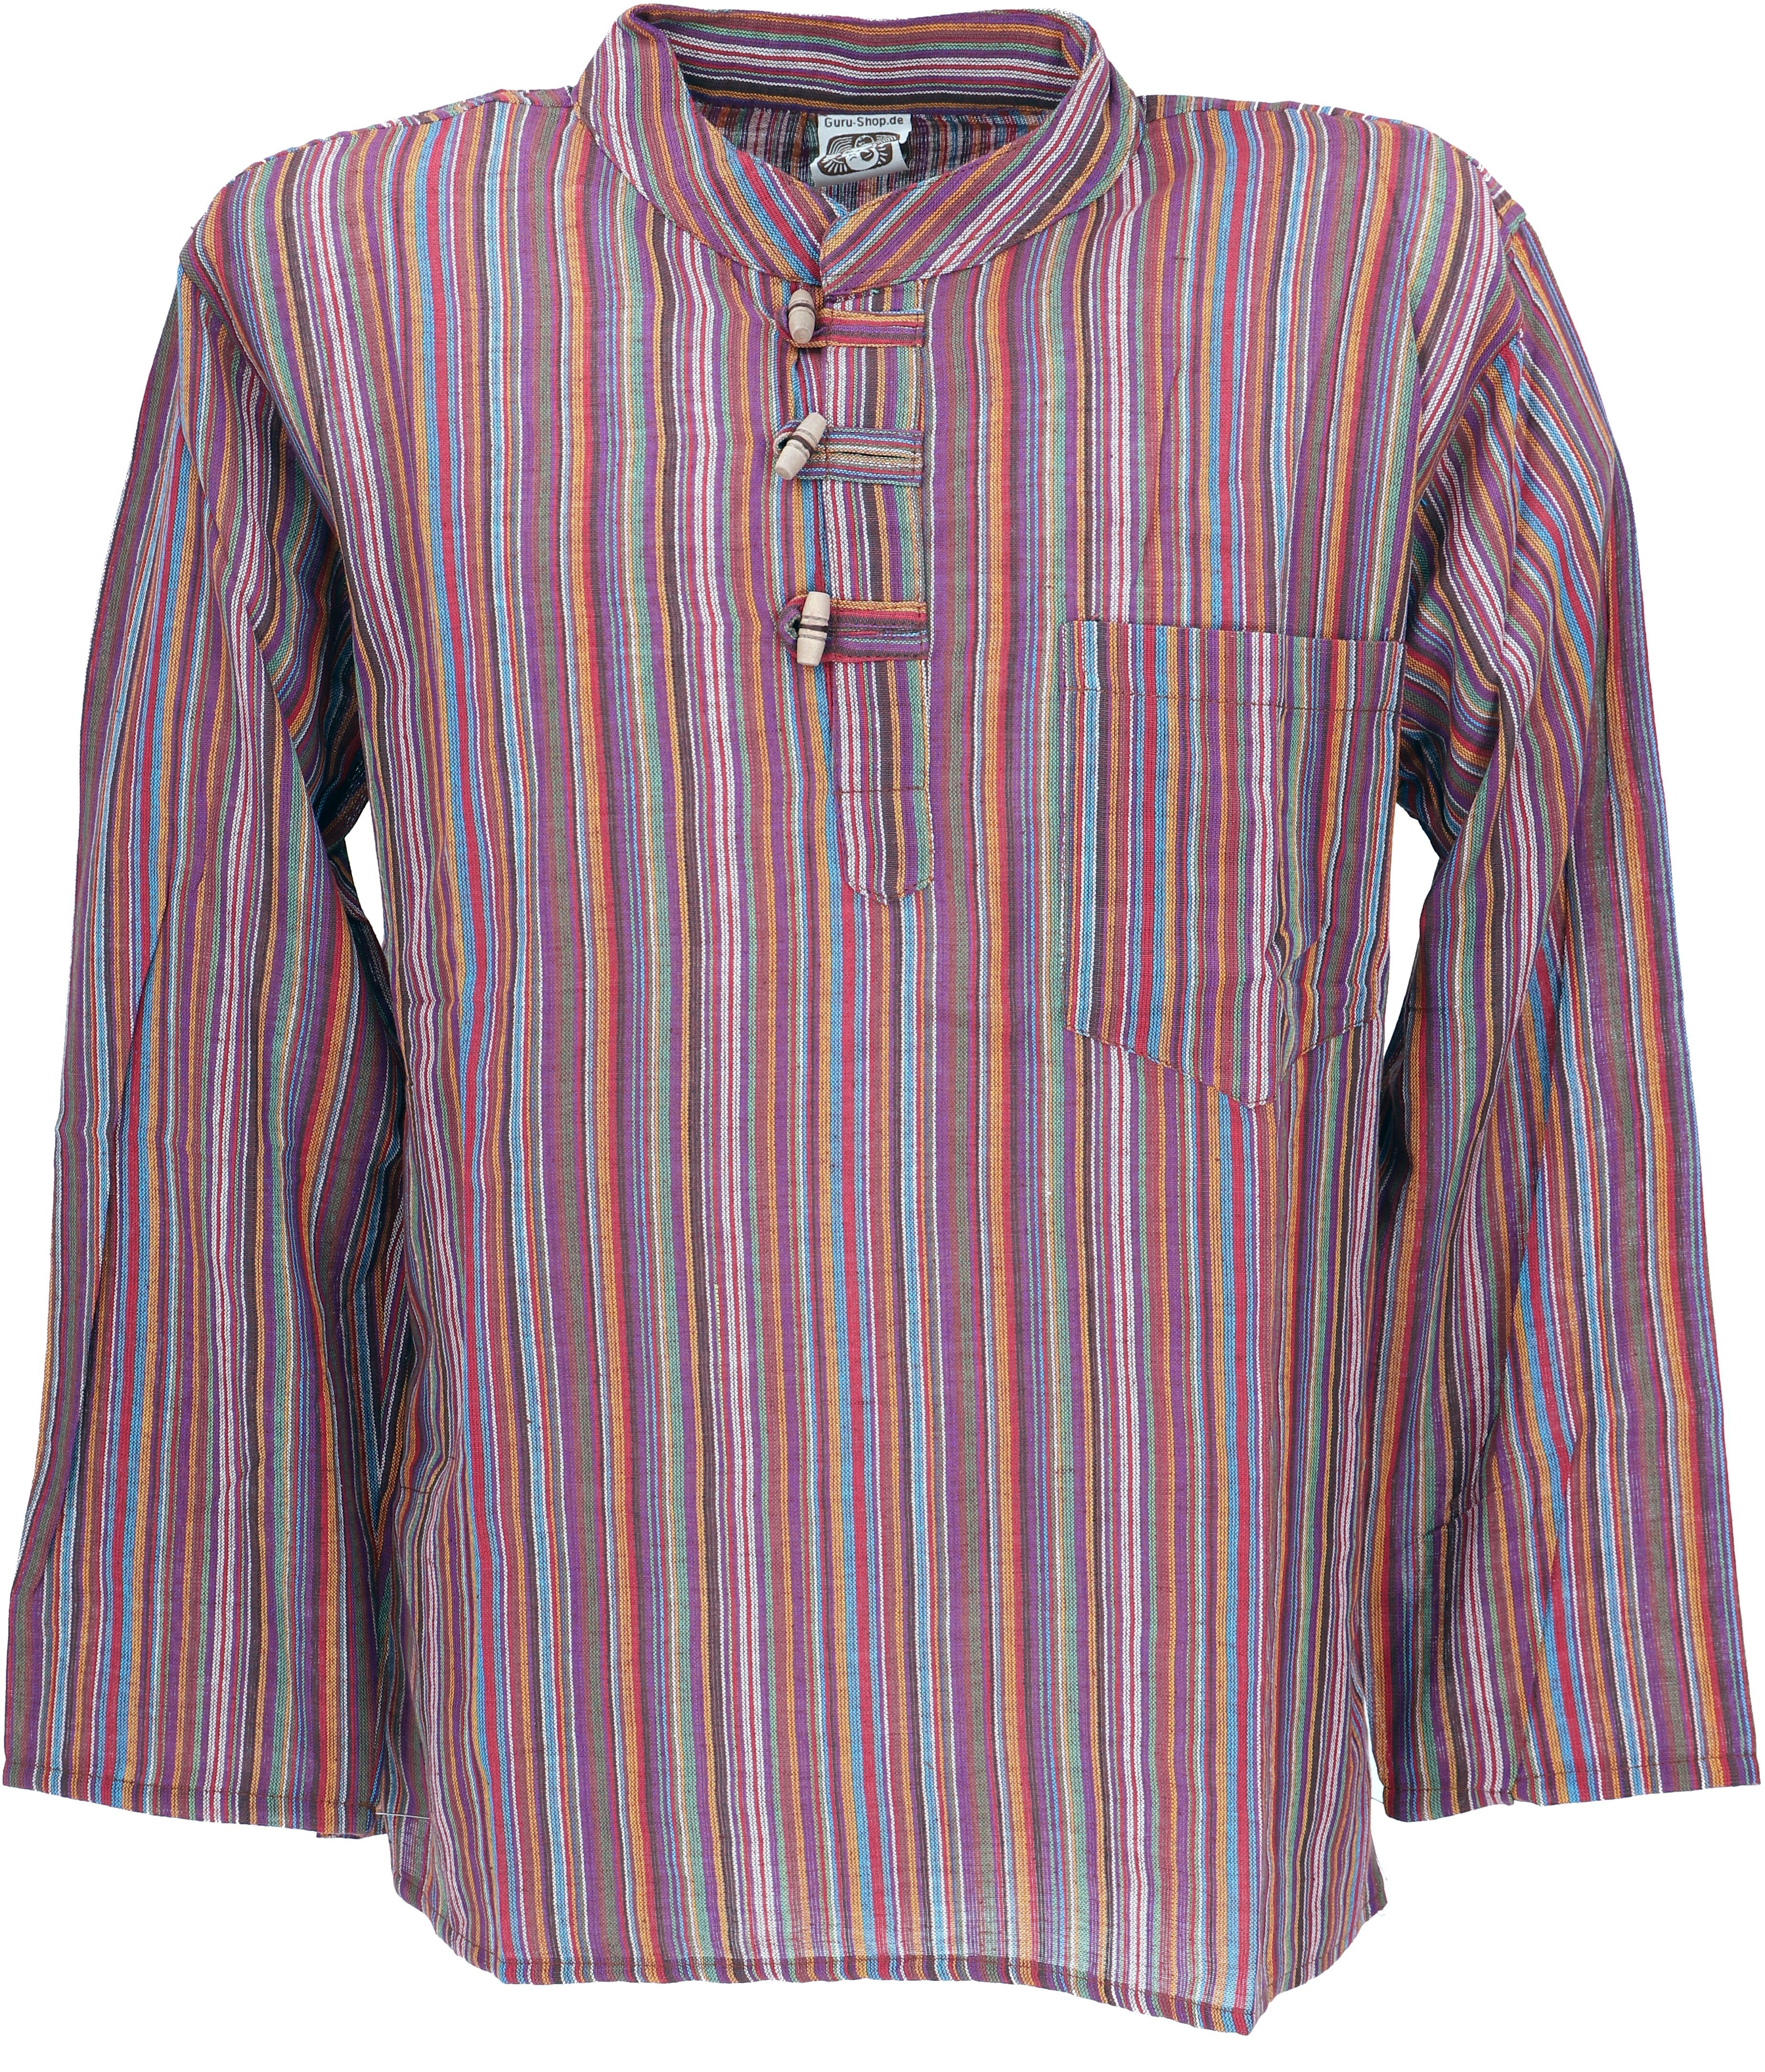 Guru-Shop Hemd & Shirt Nepal Fischerhemd, gestreiftes Goa Hippie Hemd,.. Retro, Ethno Style, alternative Bekleidung